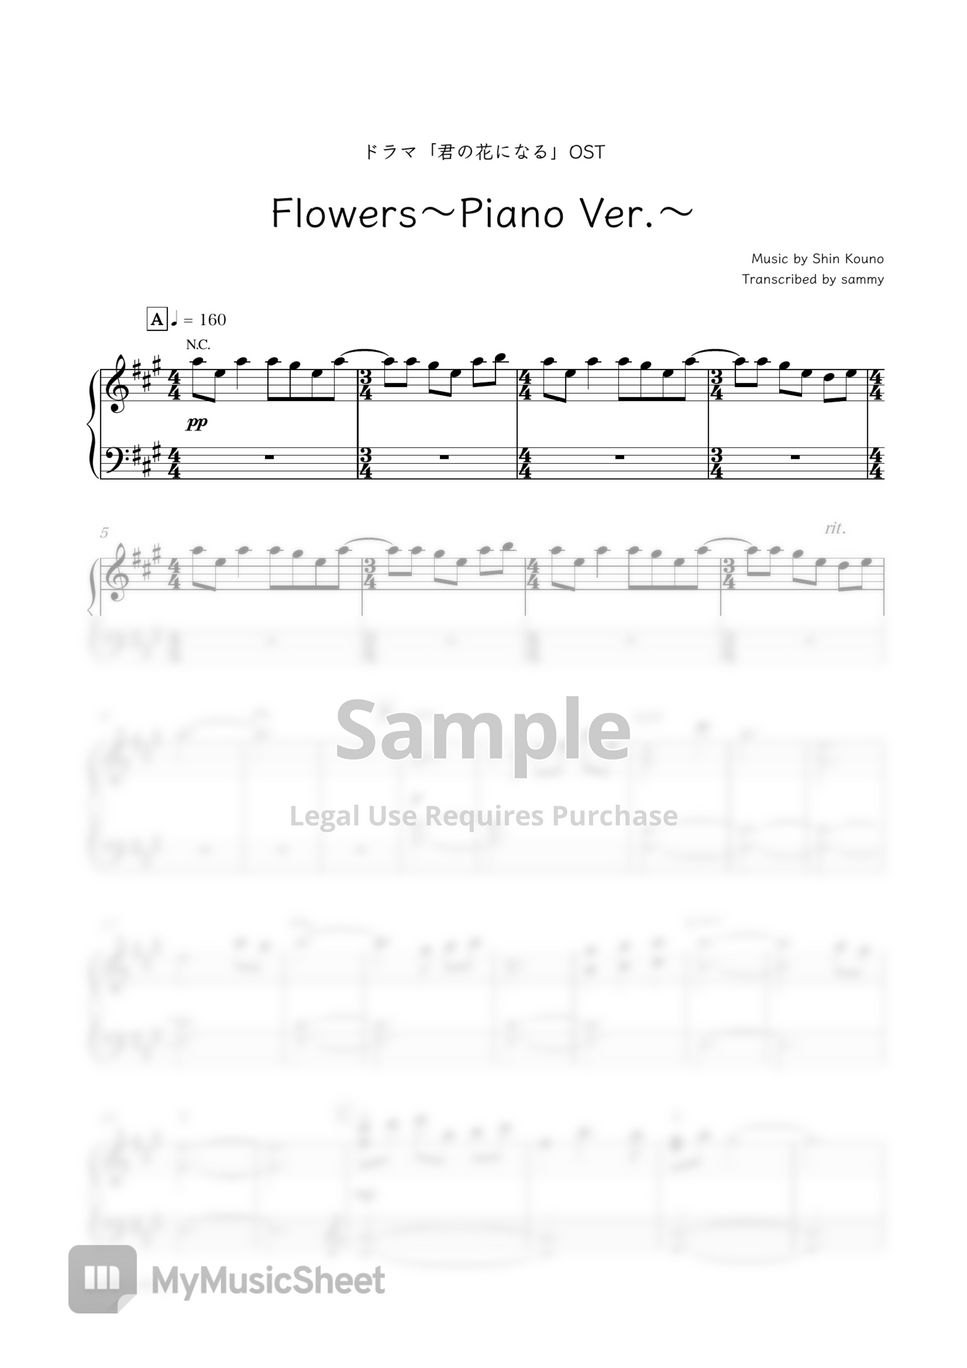 ドラマ『君の花になる』OST - Flowers〜Piano Ver.〜 by sammy